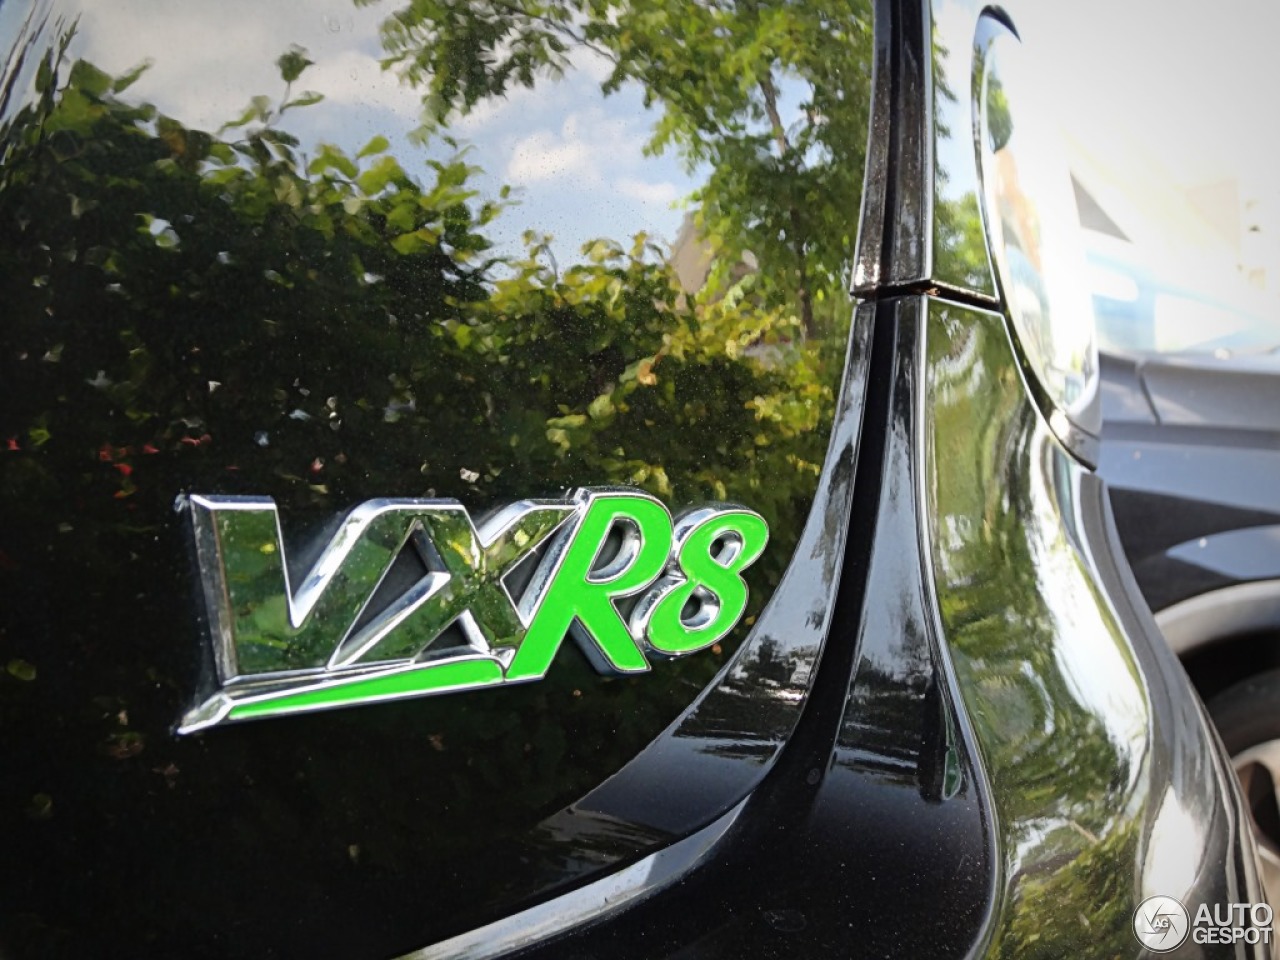 Vauxhall VXR8